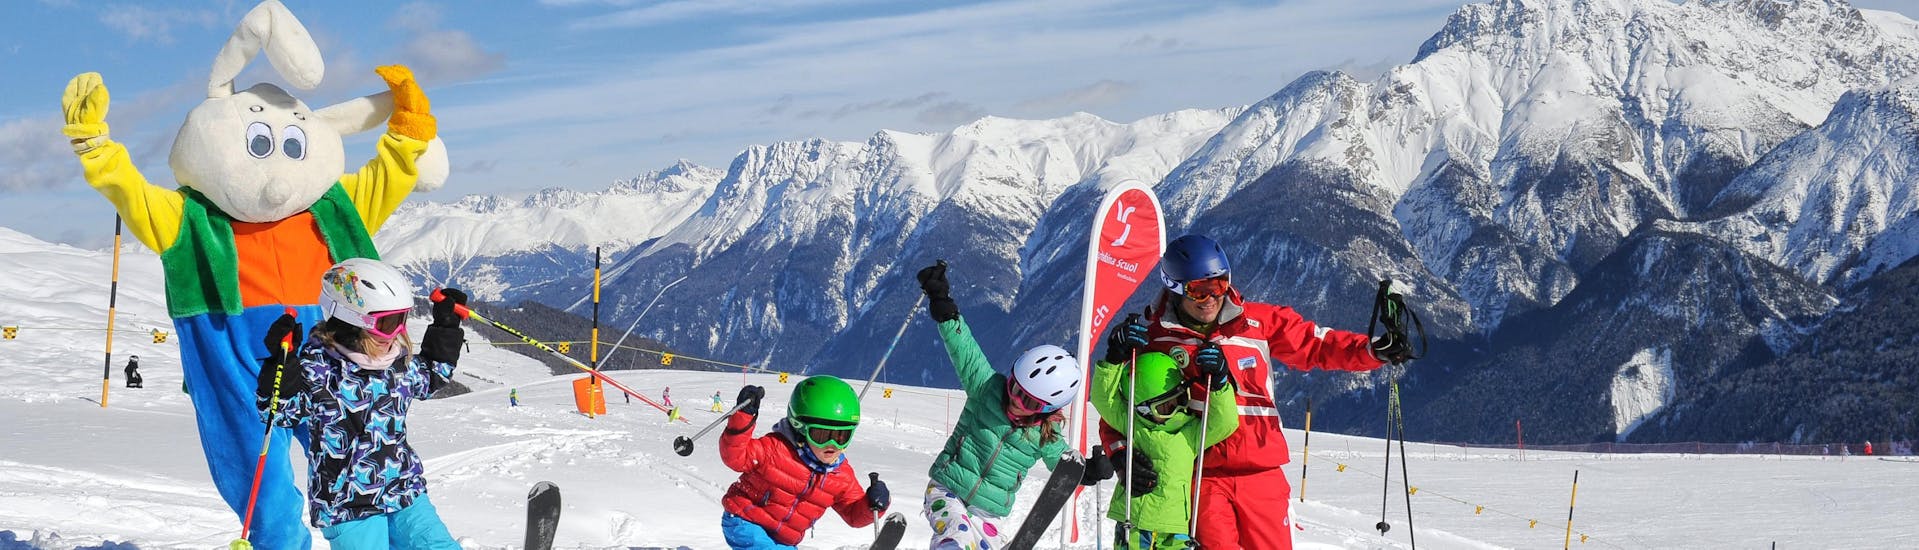 Clases de esquí para niños a partir de 3 años con experiencia.